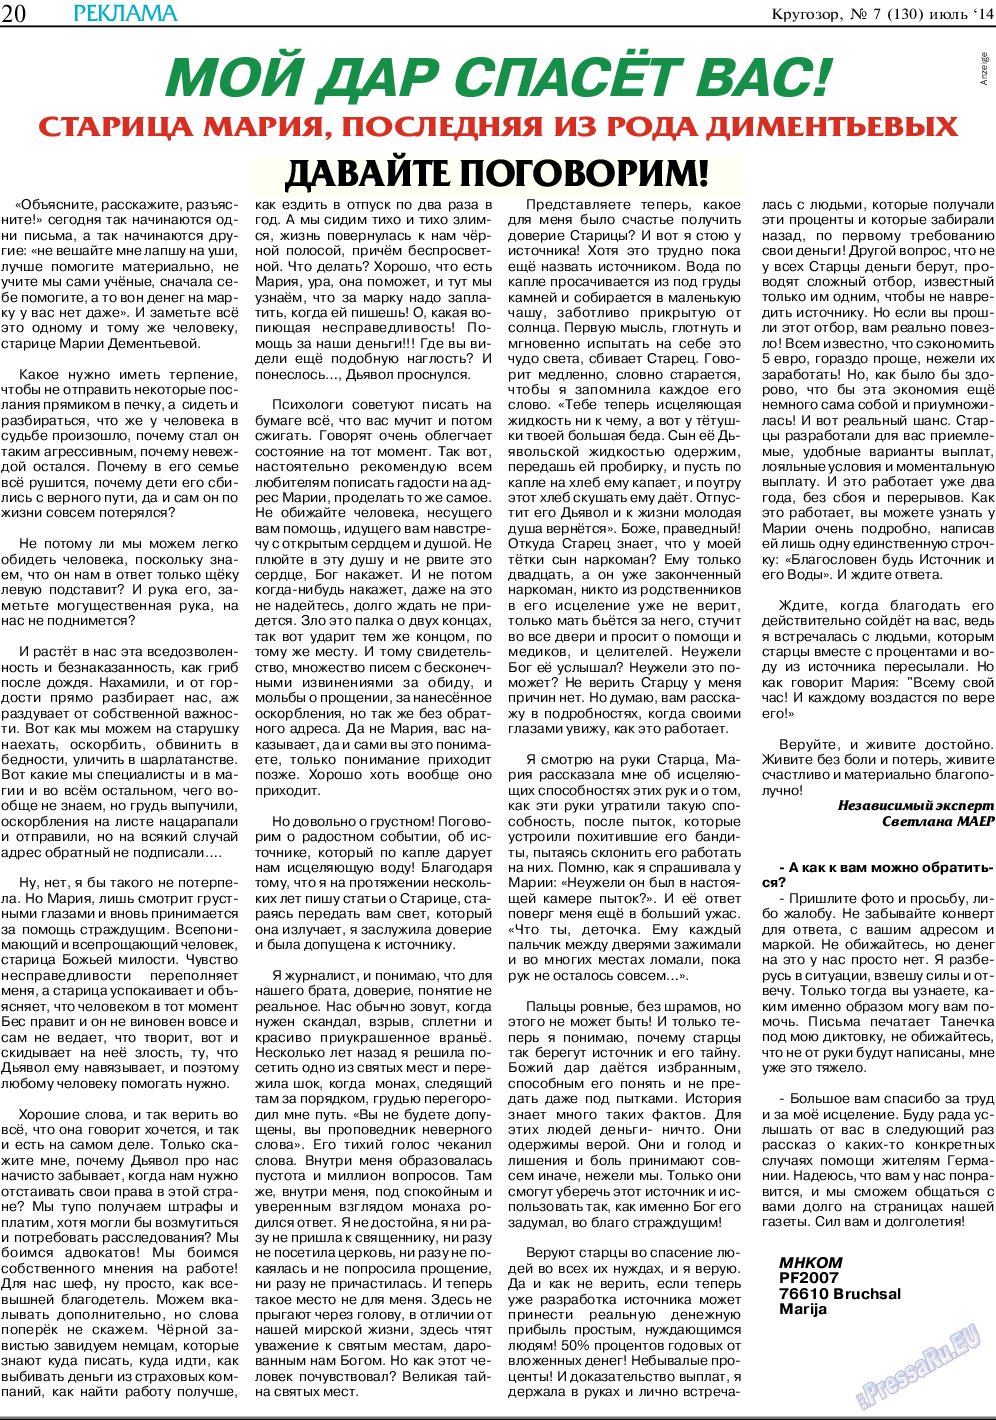 Кругозор (газета). 2014 год, номер 7, стр. 20